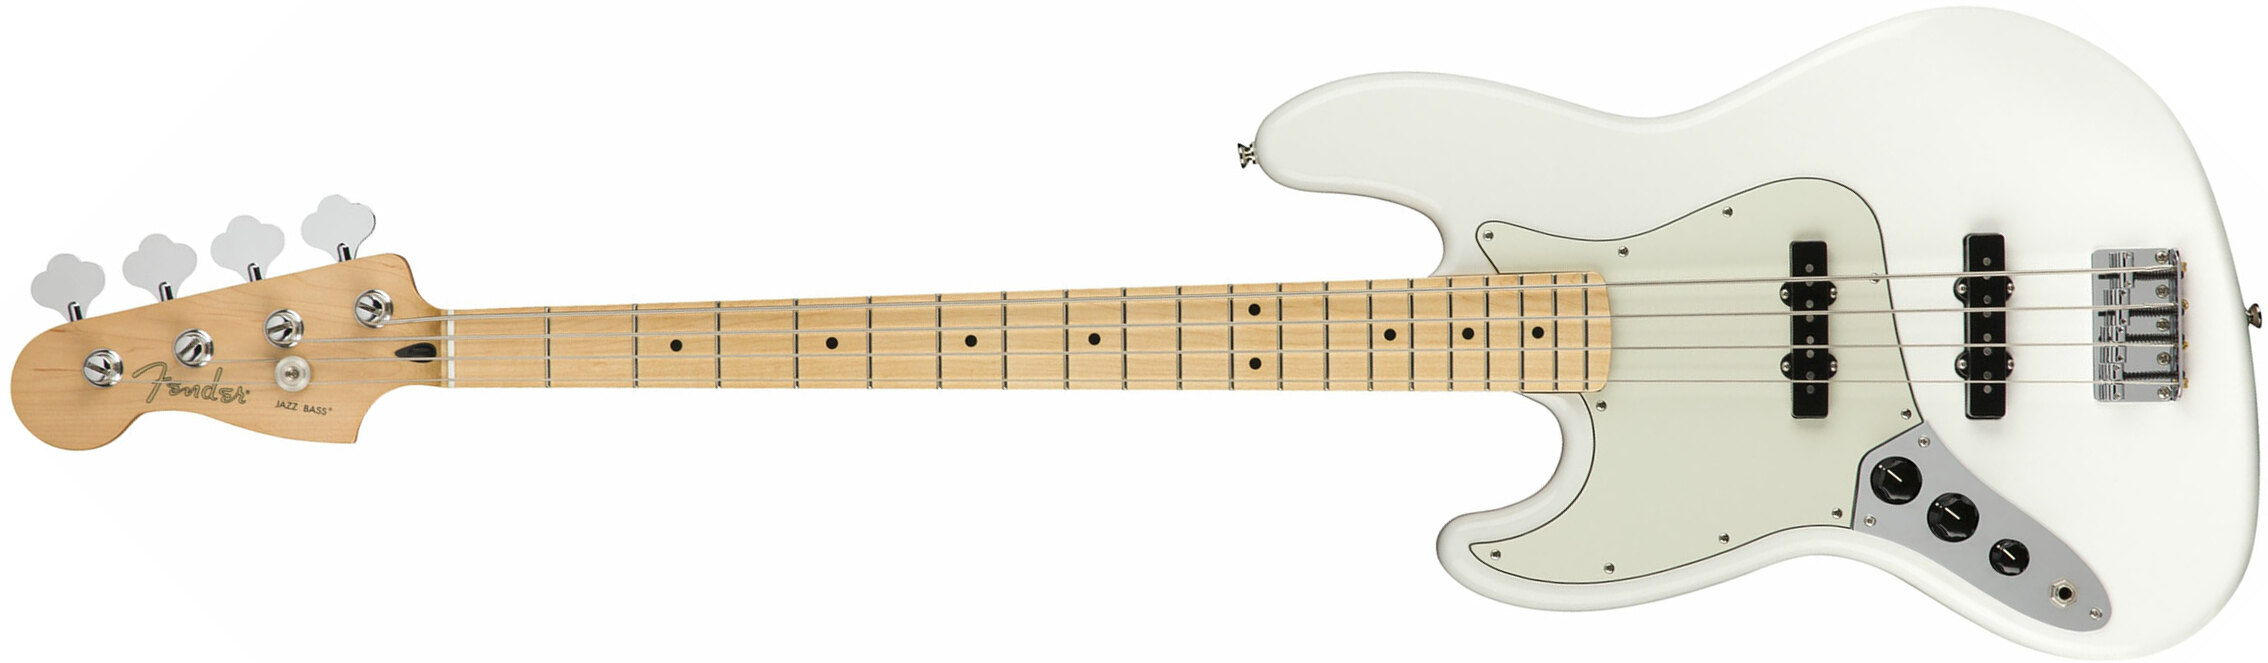 Fender Jazz Bass Player Lh Gaucher Mex Mn - Polar White - Solid body elektrische bas - Main picture